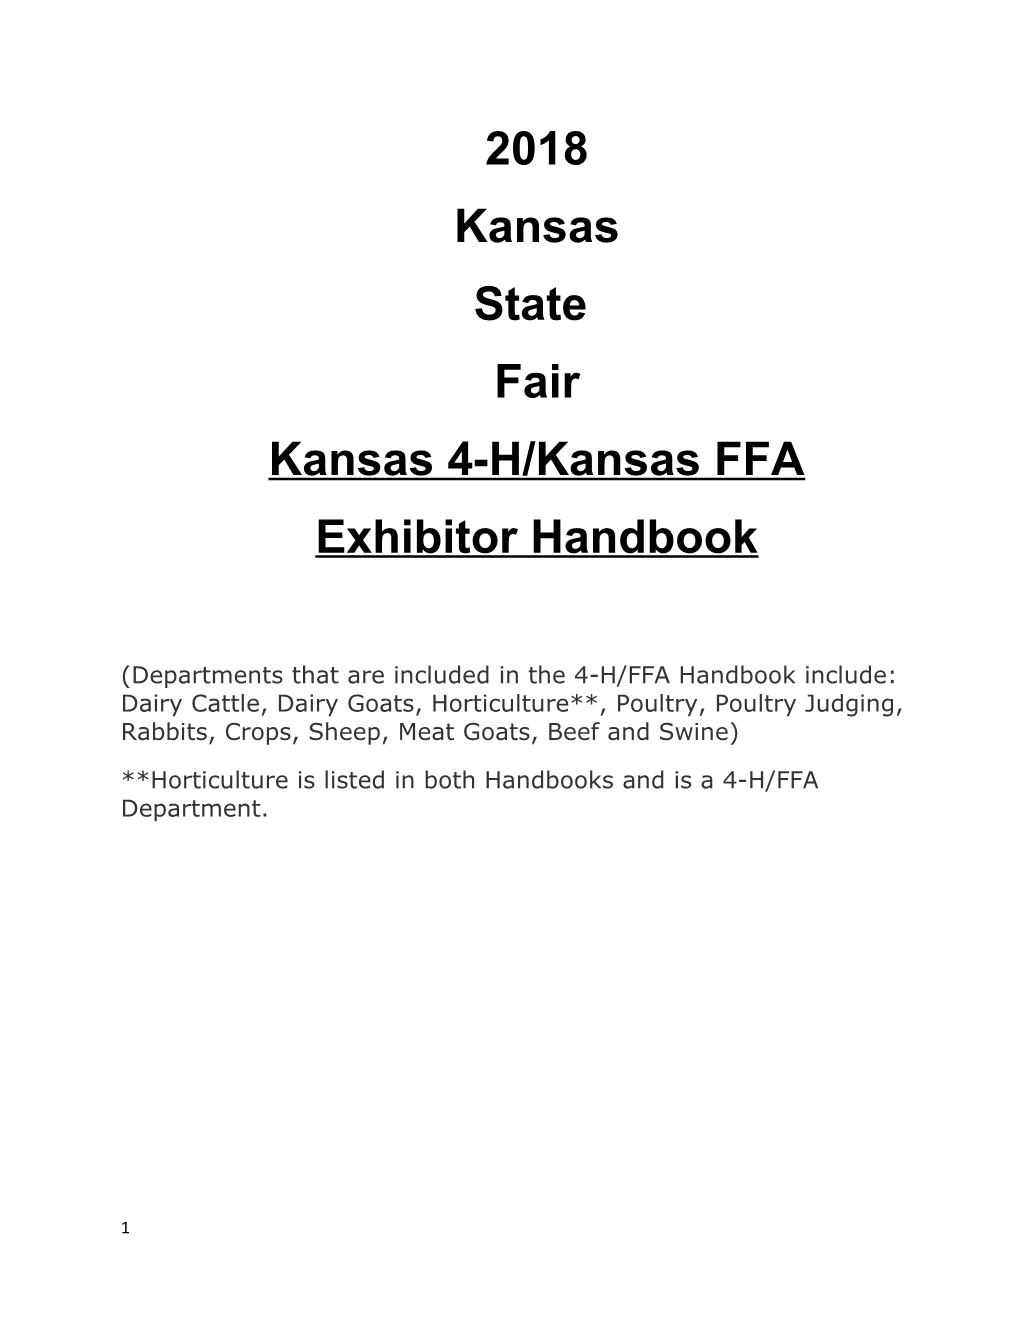 Kansas 4-H/Kansas FFA